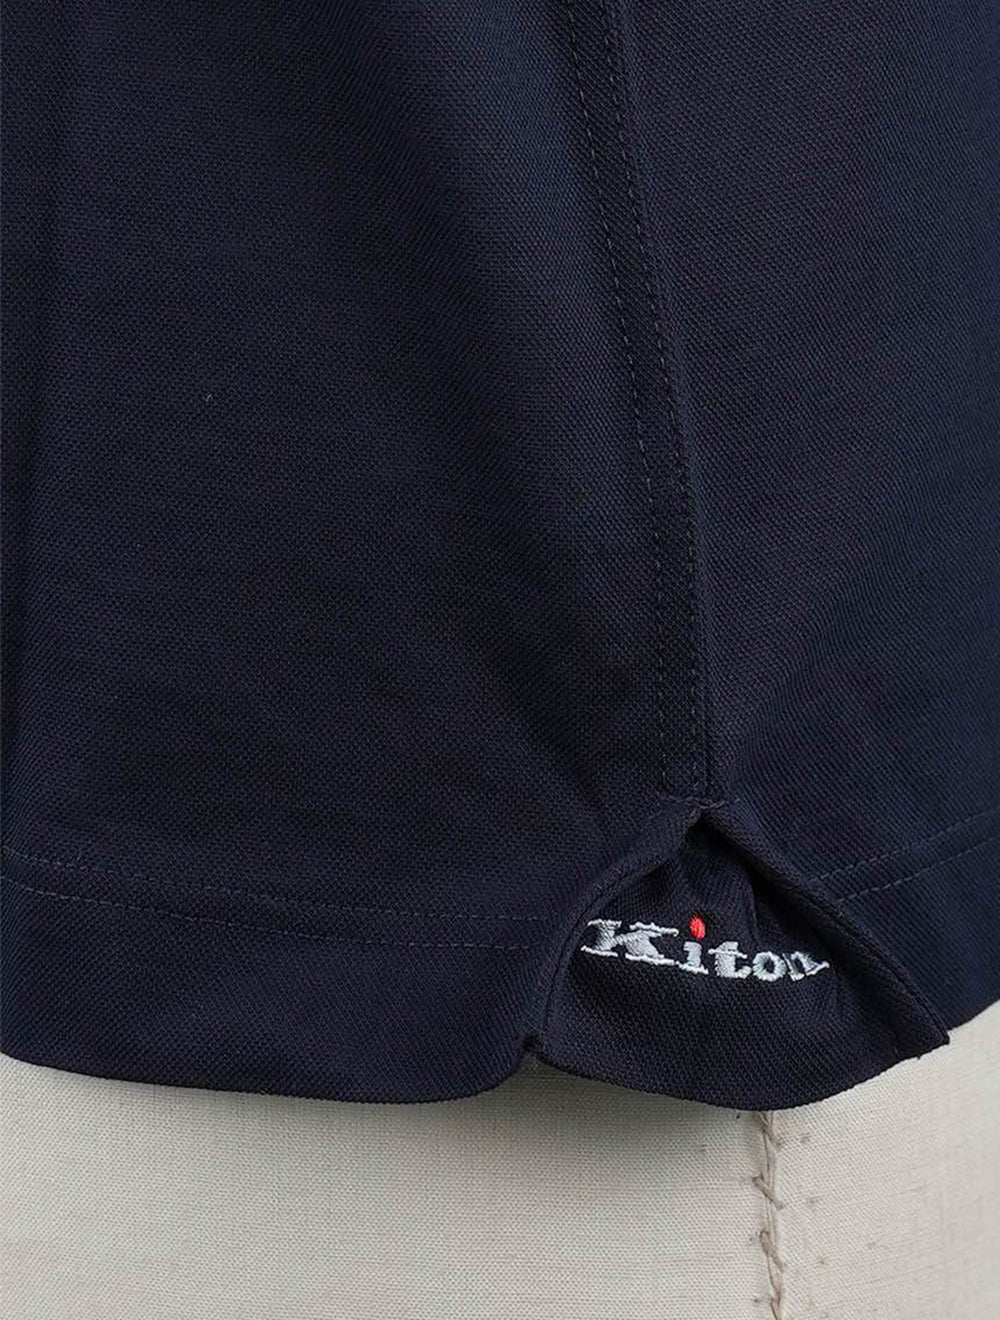 Kiton blue navy cotton polo